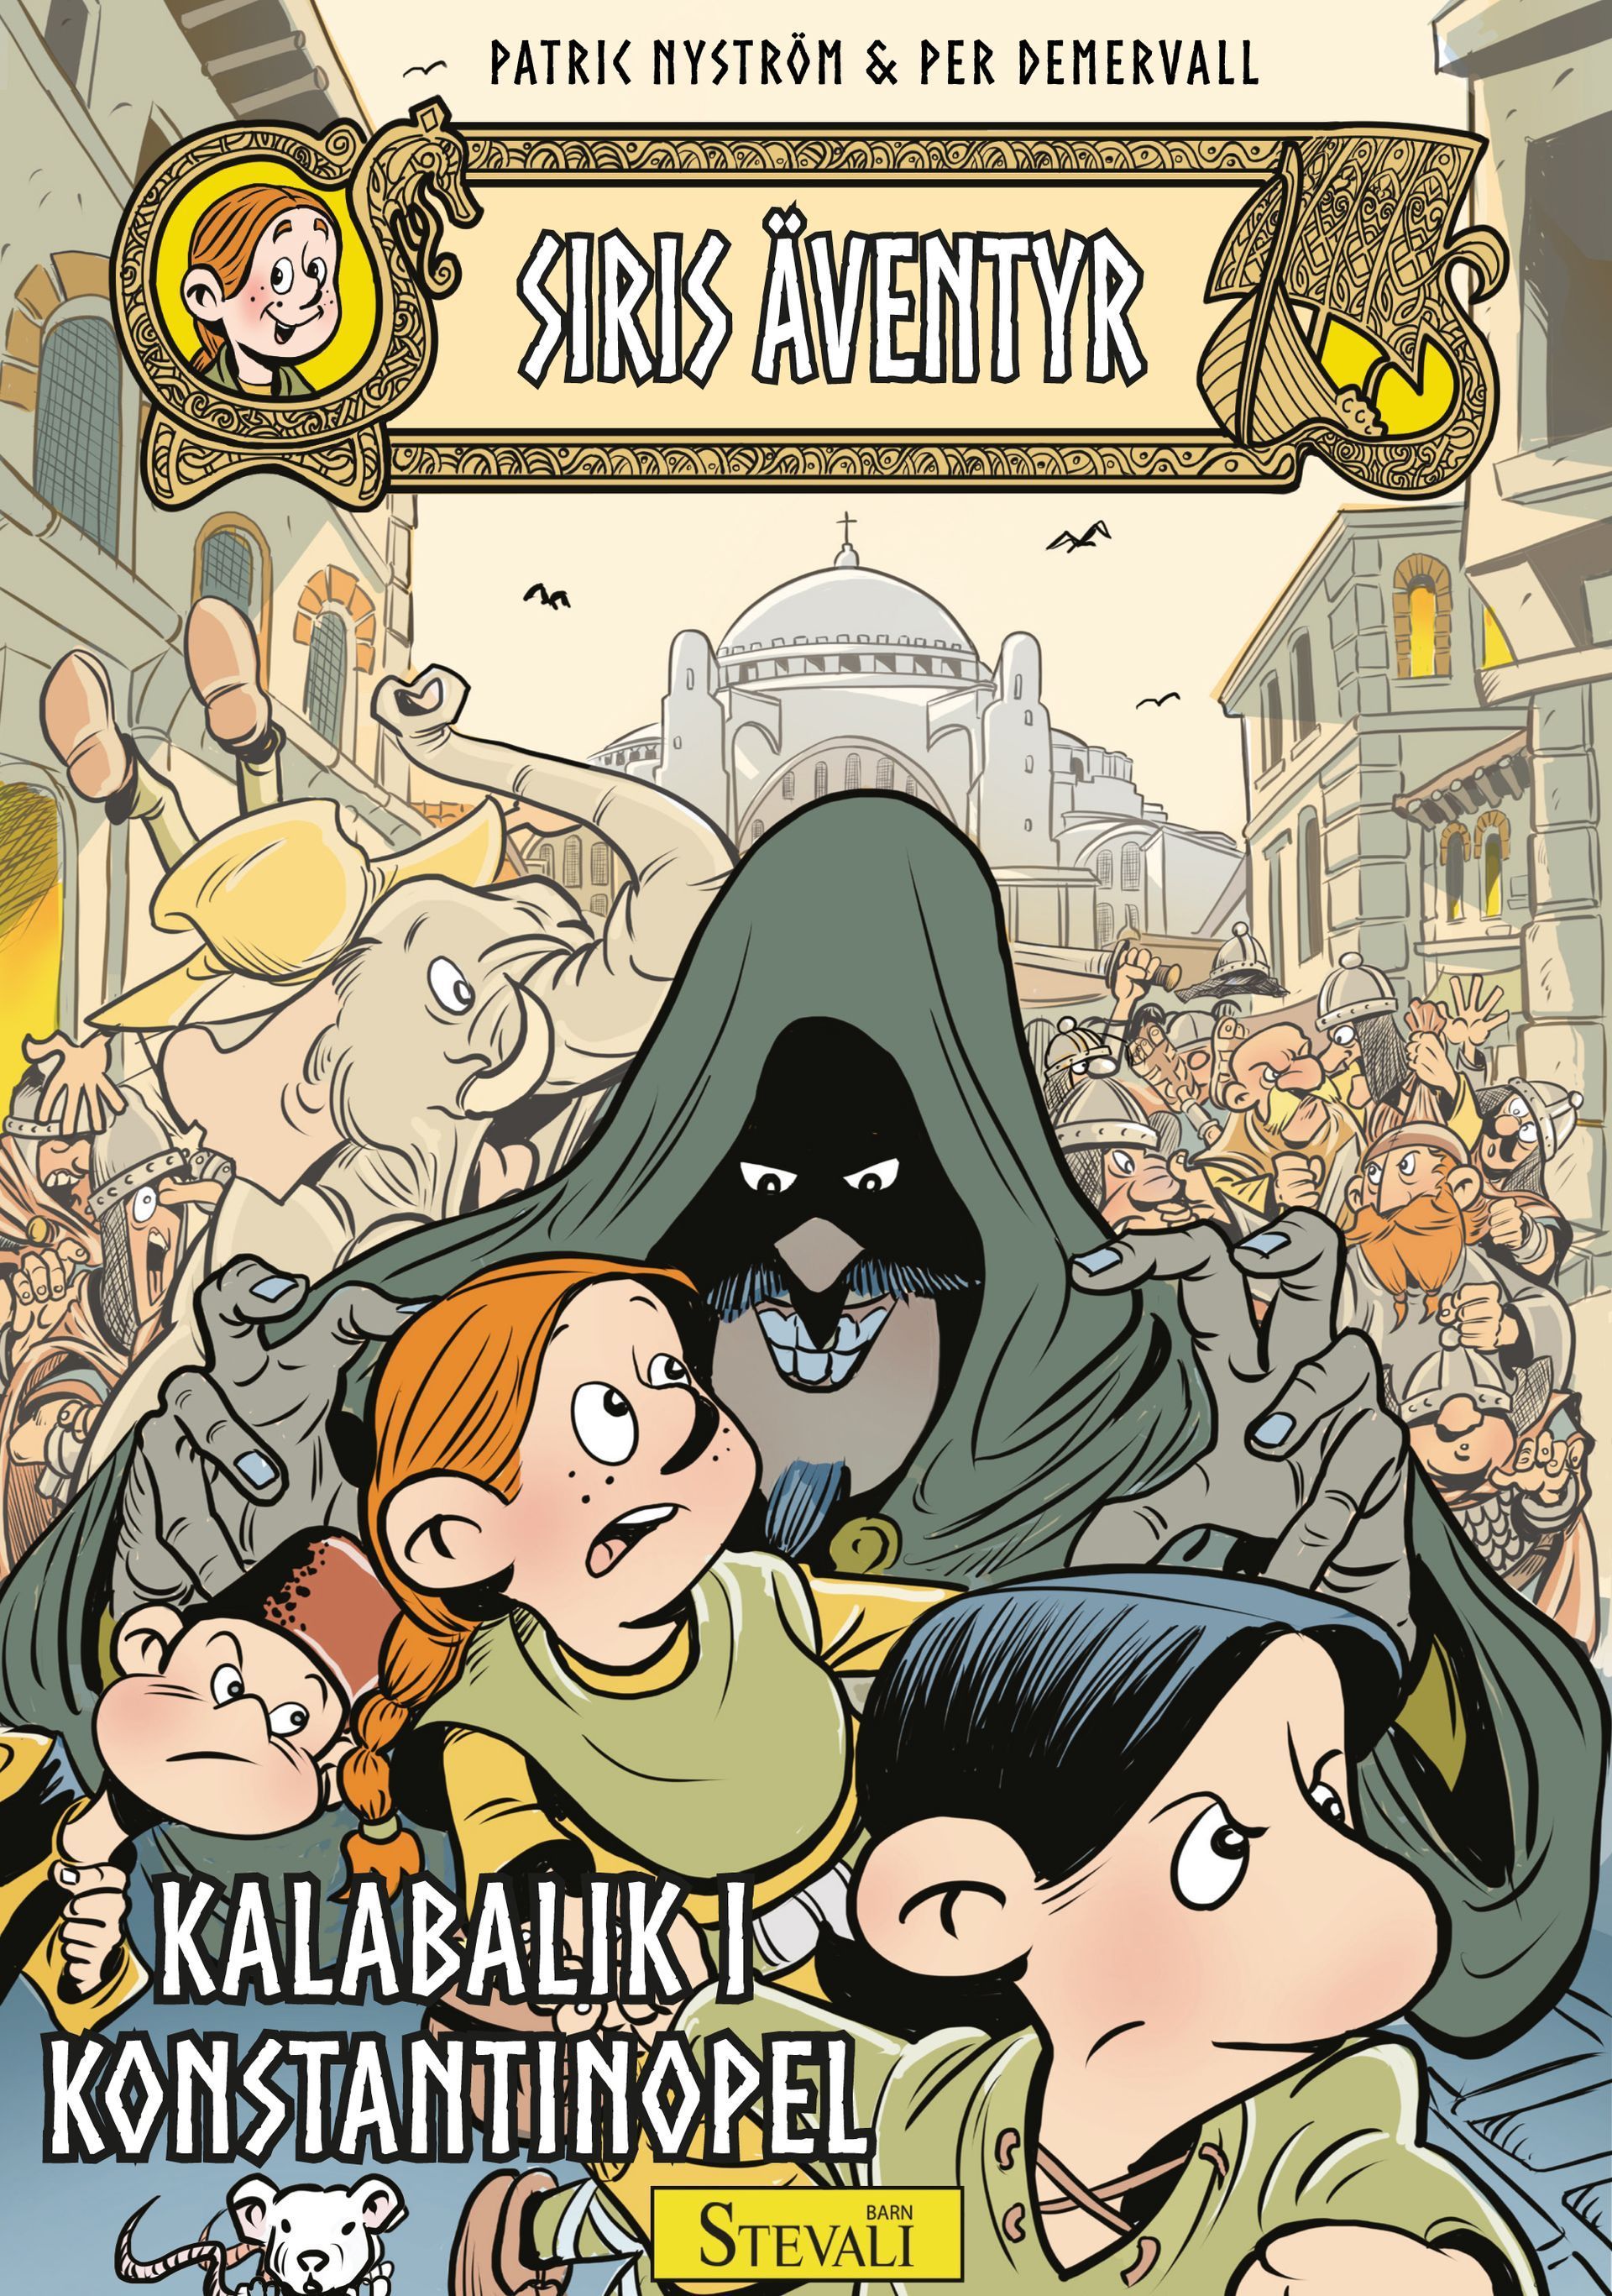 Barnboken Siris äventyr: Kalabalik i Konstantinopel är skriven av Patric Nyström och illustrerad av Per Demervall på Stevali Bokförlag.